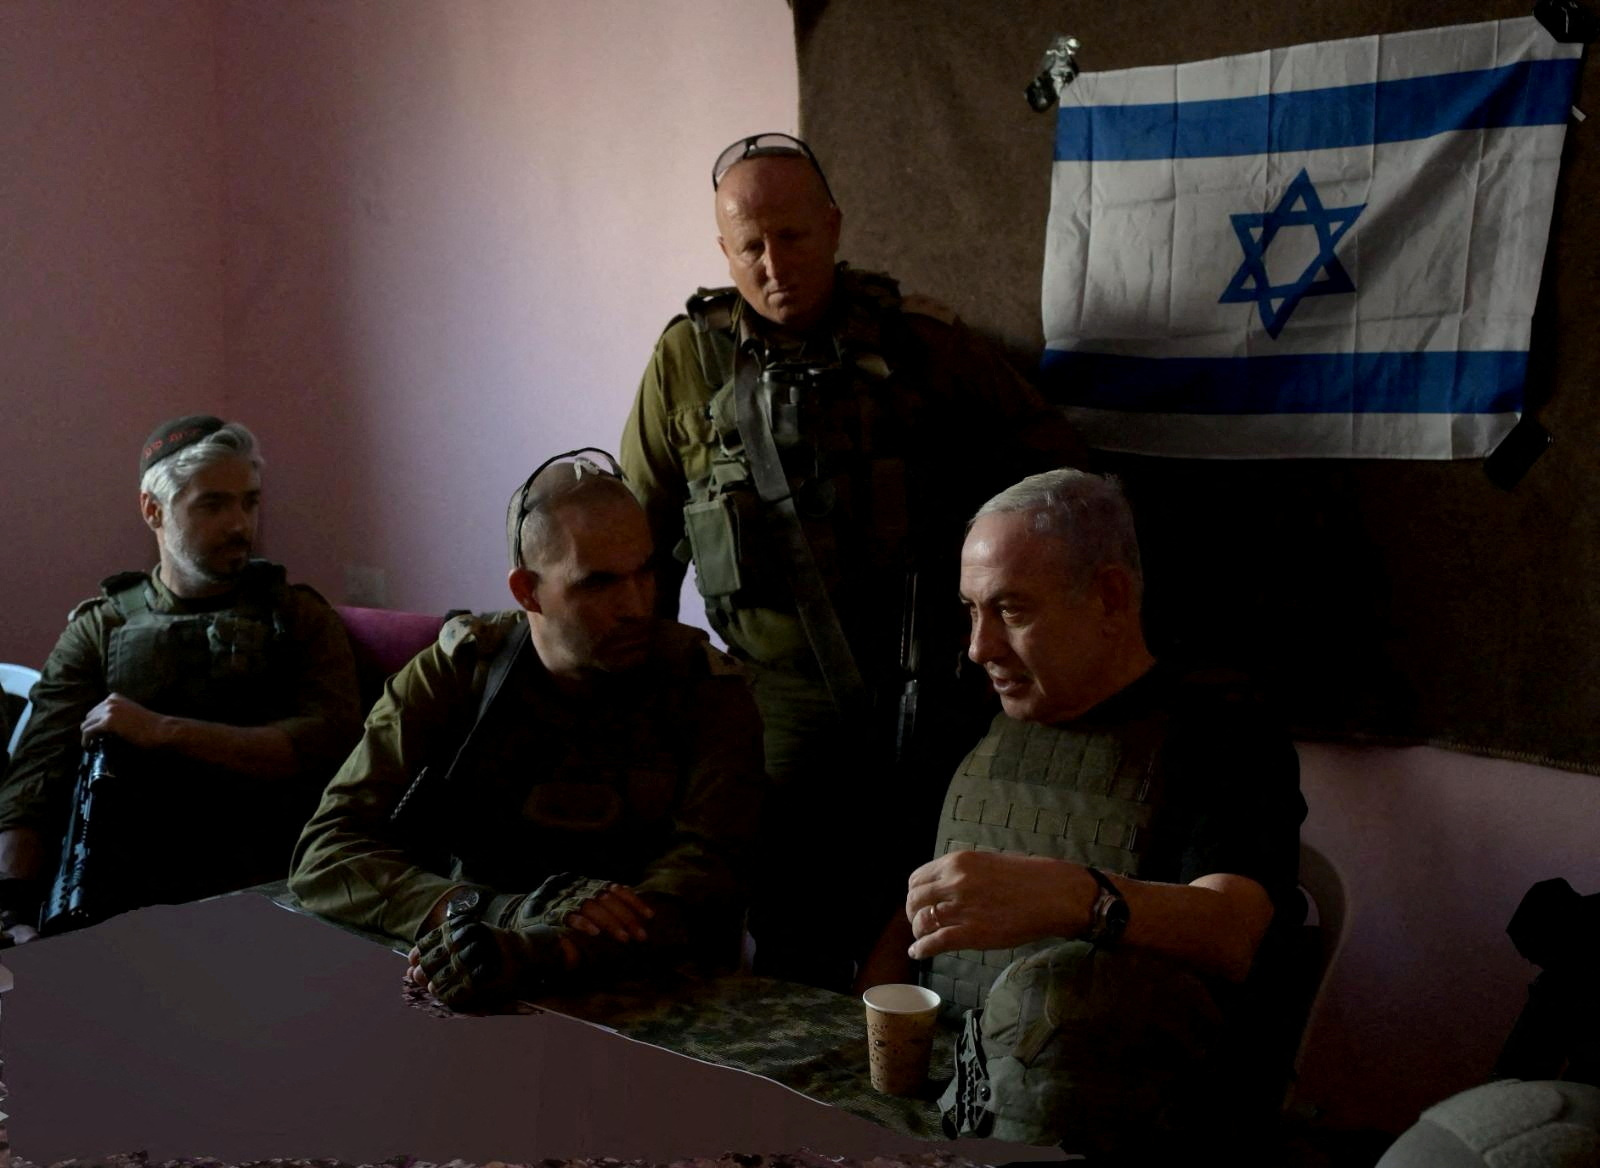 Israeli Prime Minister Netanyahu visits Gaza Strip